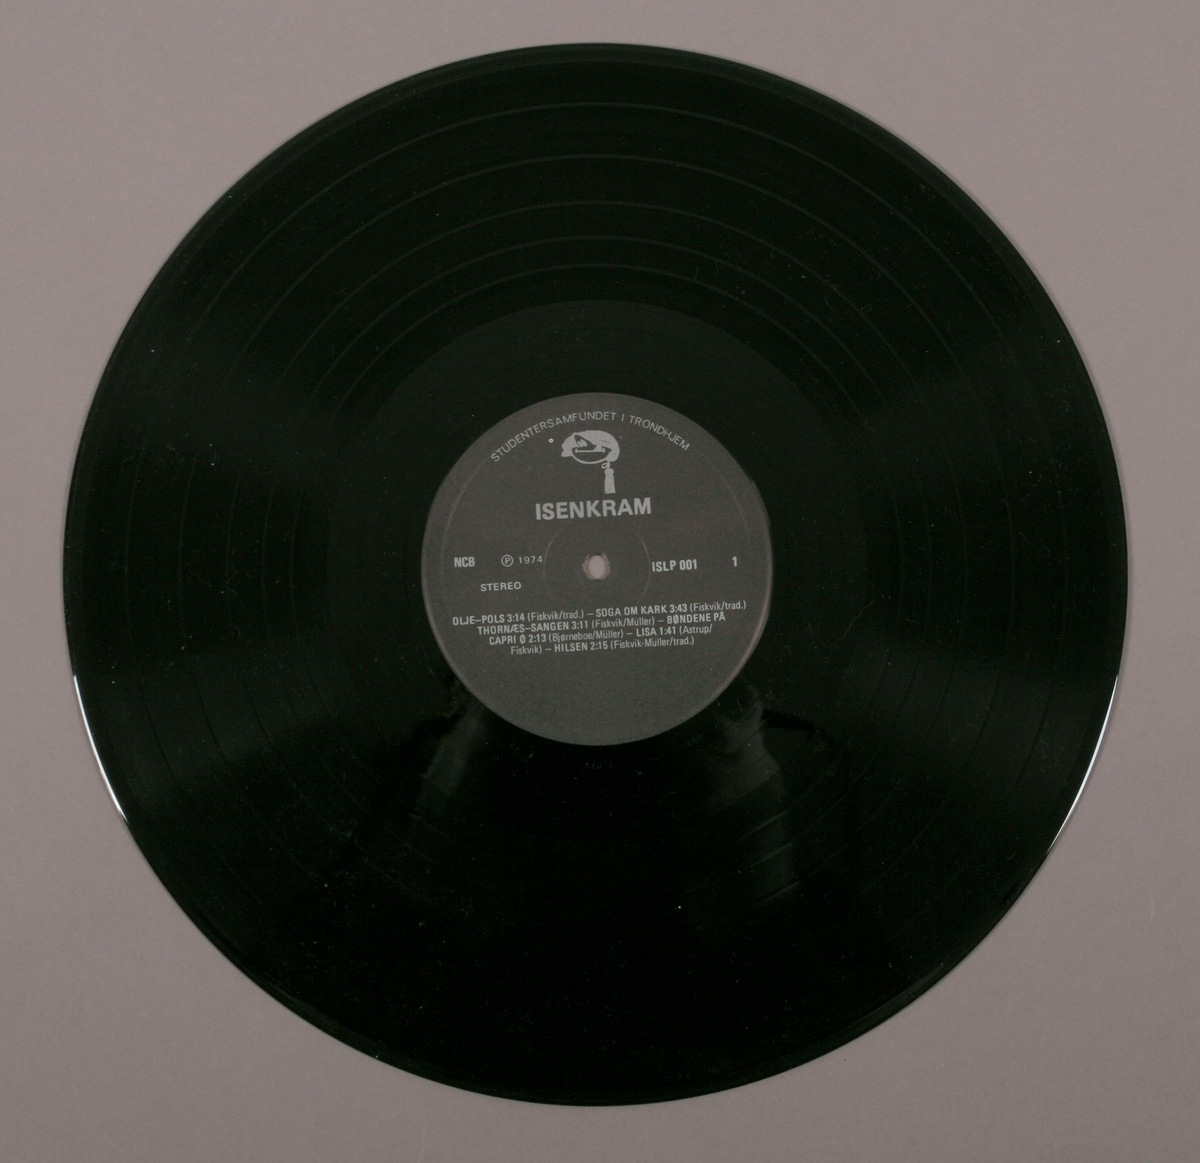 Grammofonplate i svart vinyl og plateomslag i papp. Plata ligger i en papirlomme. I tillegg er et hefte utgitt som ekstranummer av Under Dusken (Nr. 9a/74) med informasjon om musikken og utøverne, og Samfundet.